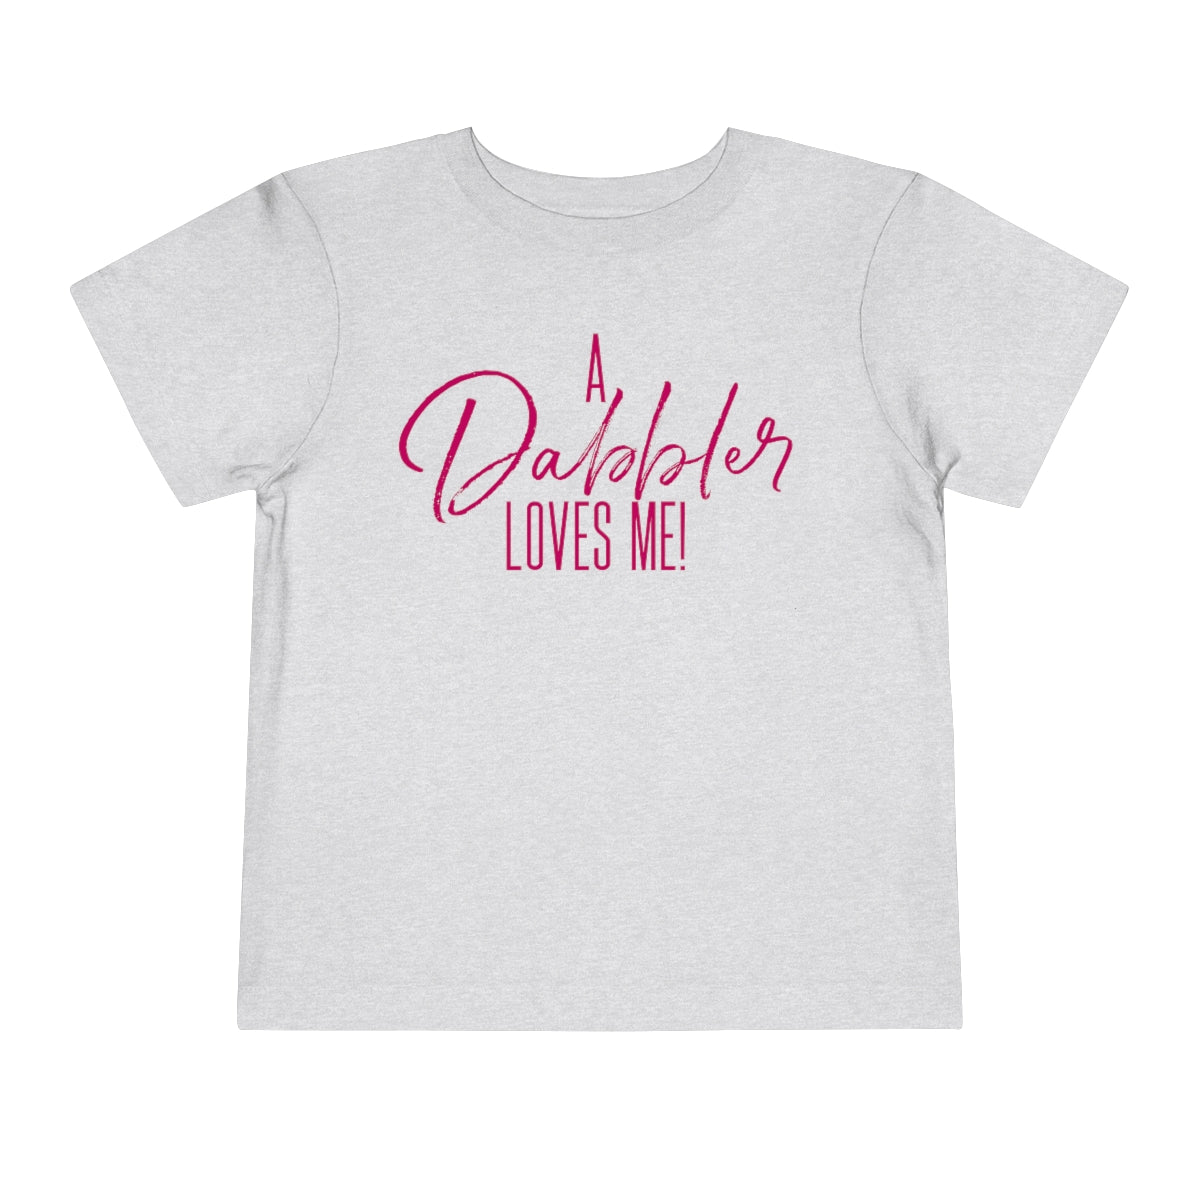 A Dabbler Loves Me (Toddler pink)